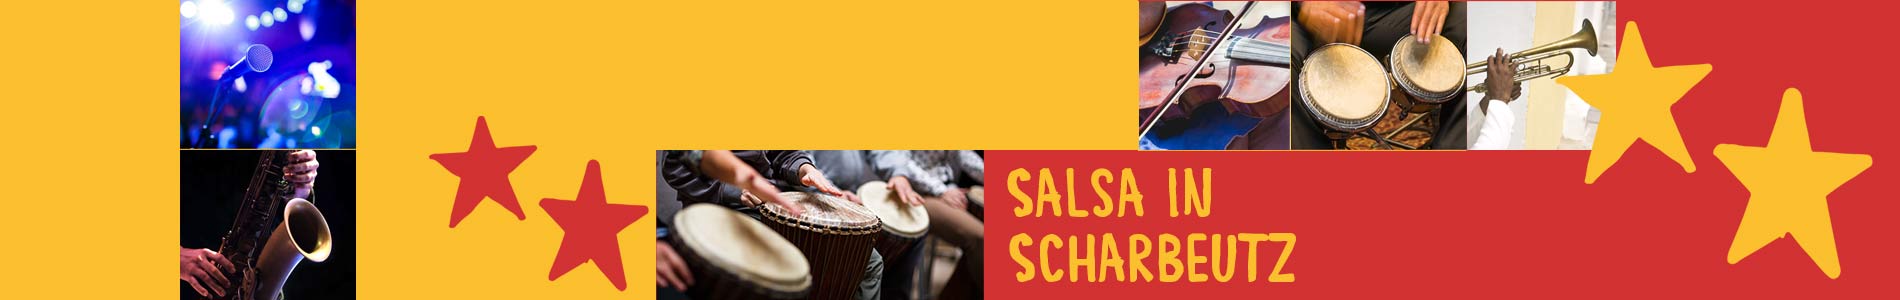 Salsa in Scharbeutz – Salsa lernen und tanzen, Tanzkurse, Partys, Veranstaltungen